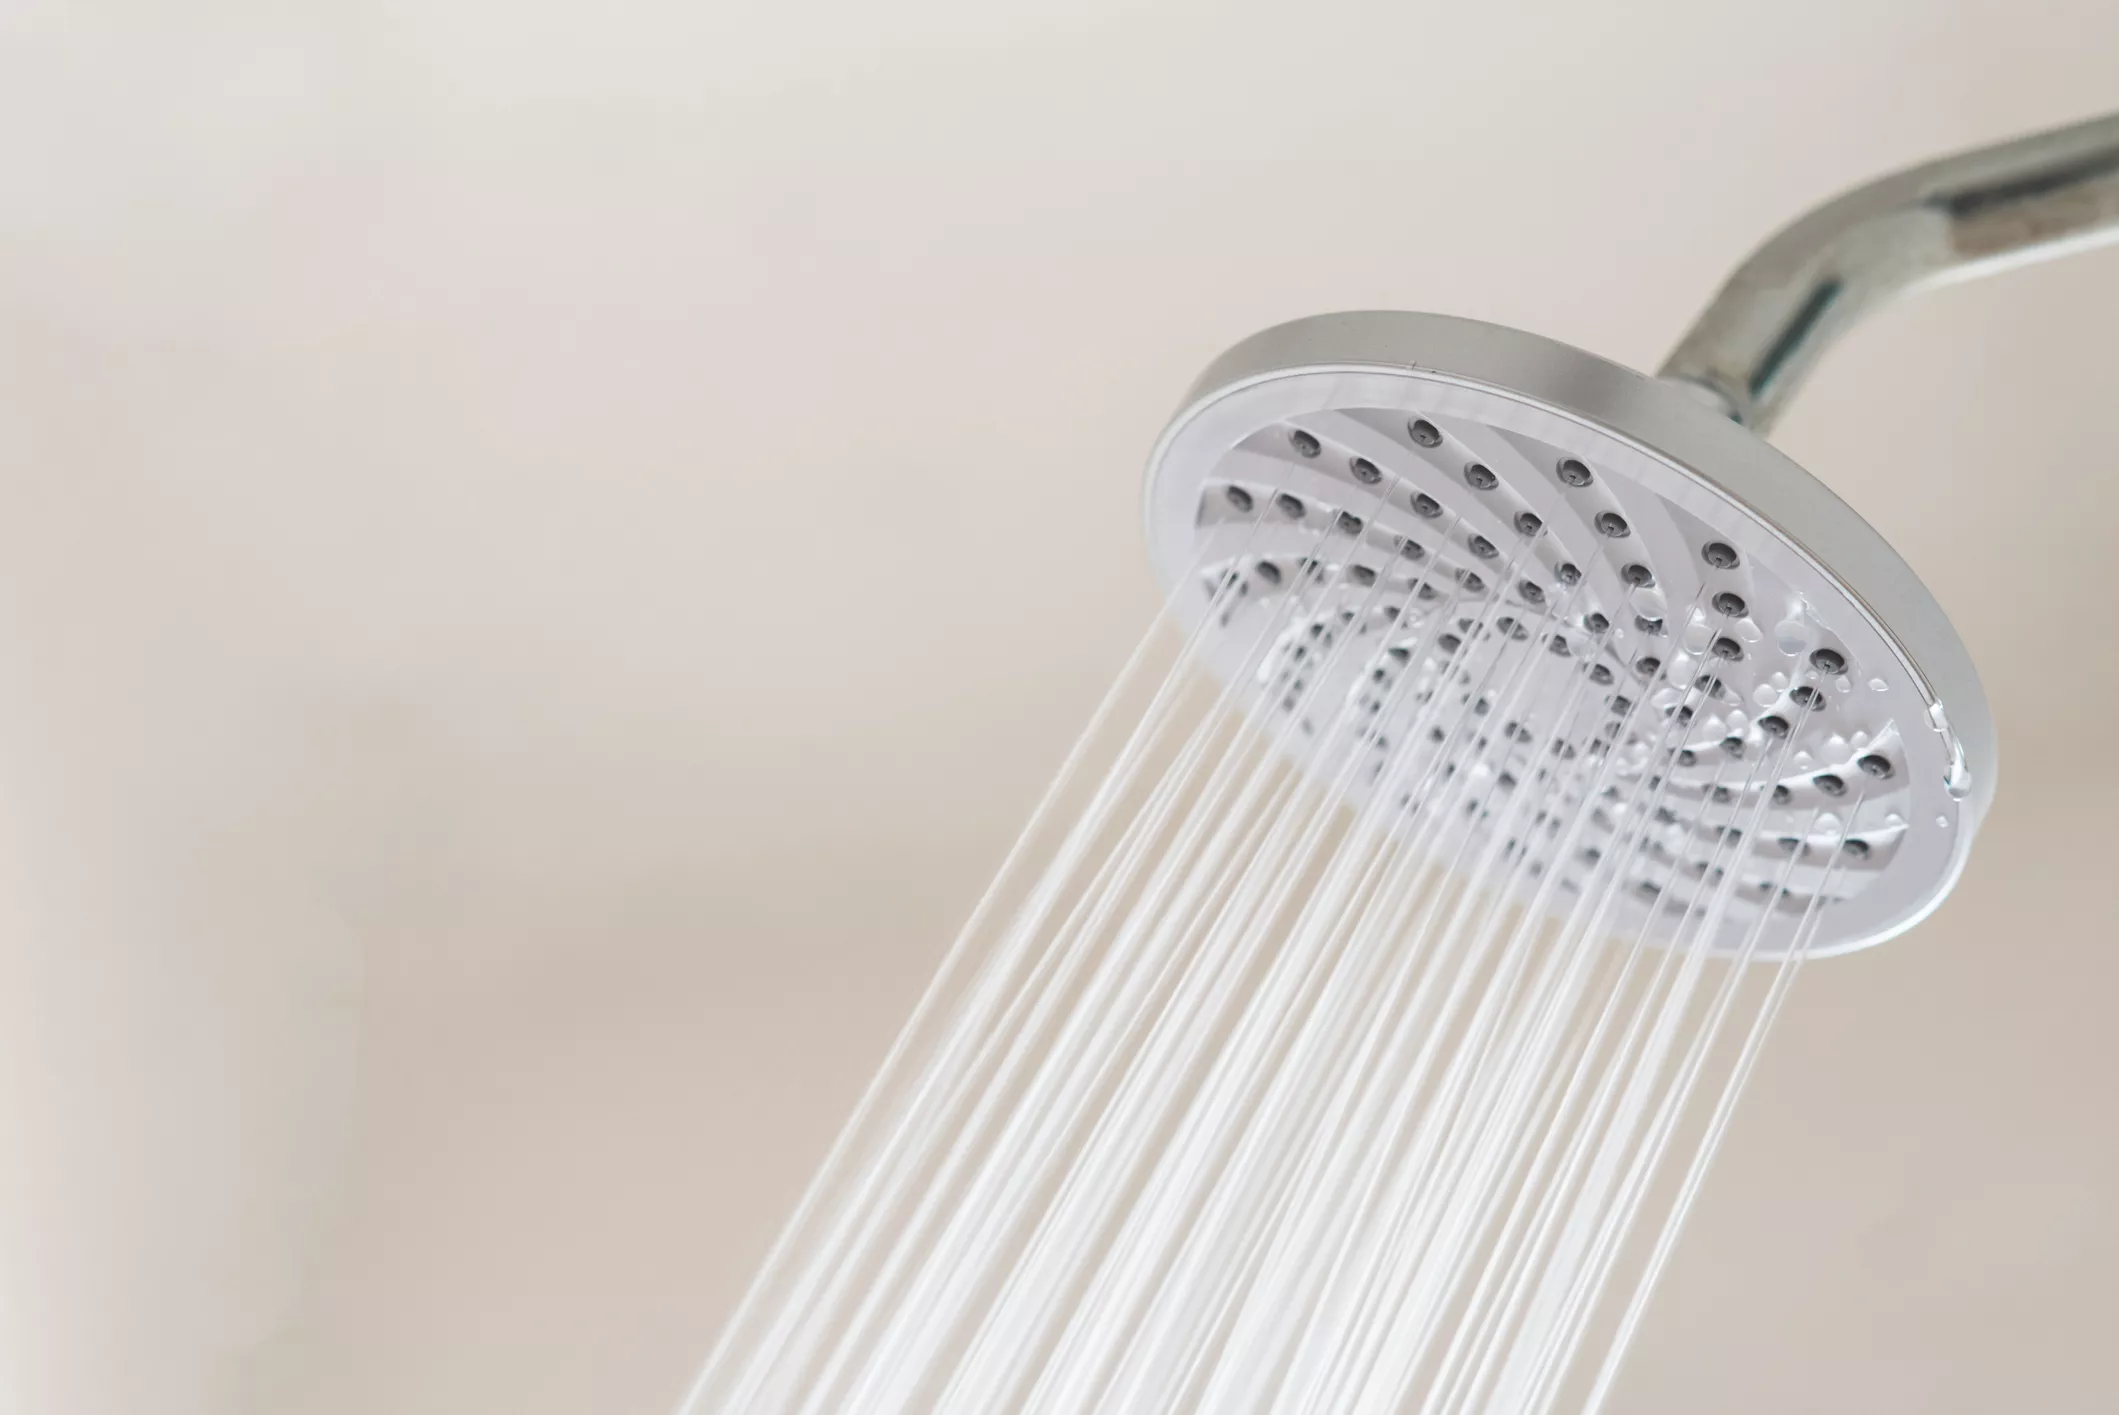 La dutxa va millorar a base d’innovacions fetes per diversos inventors, alguns anònims